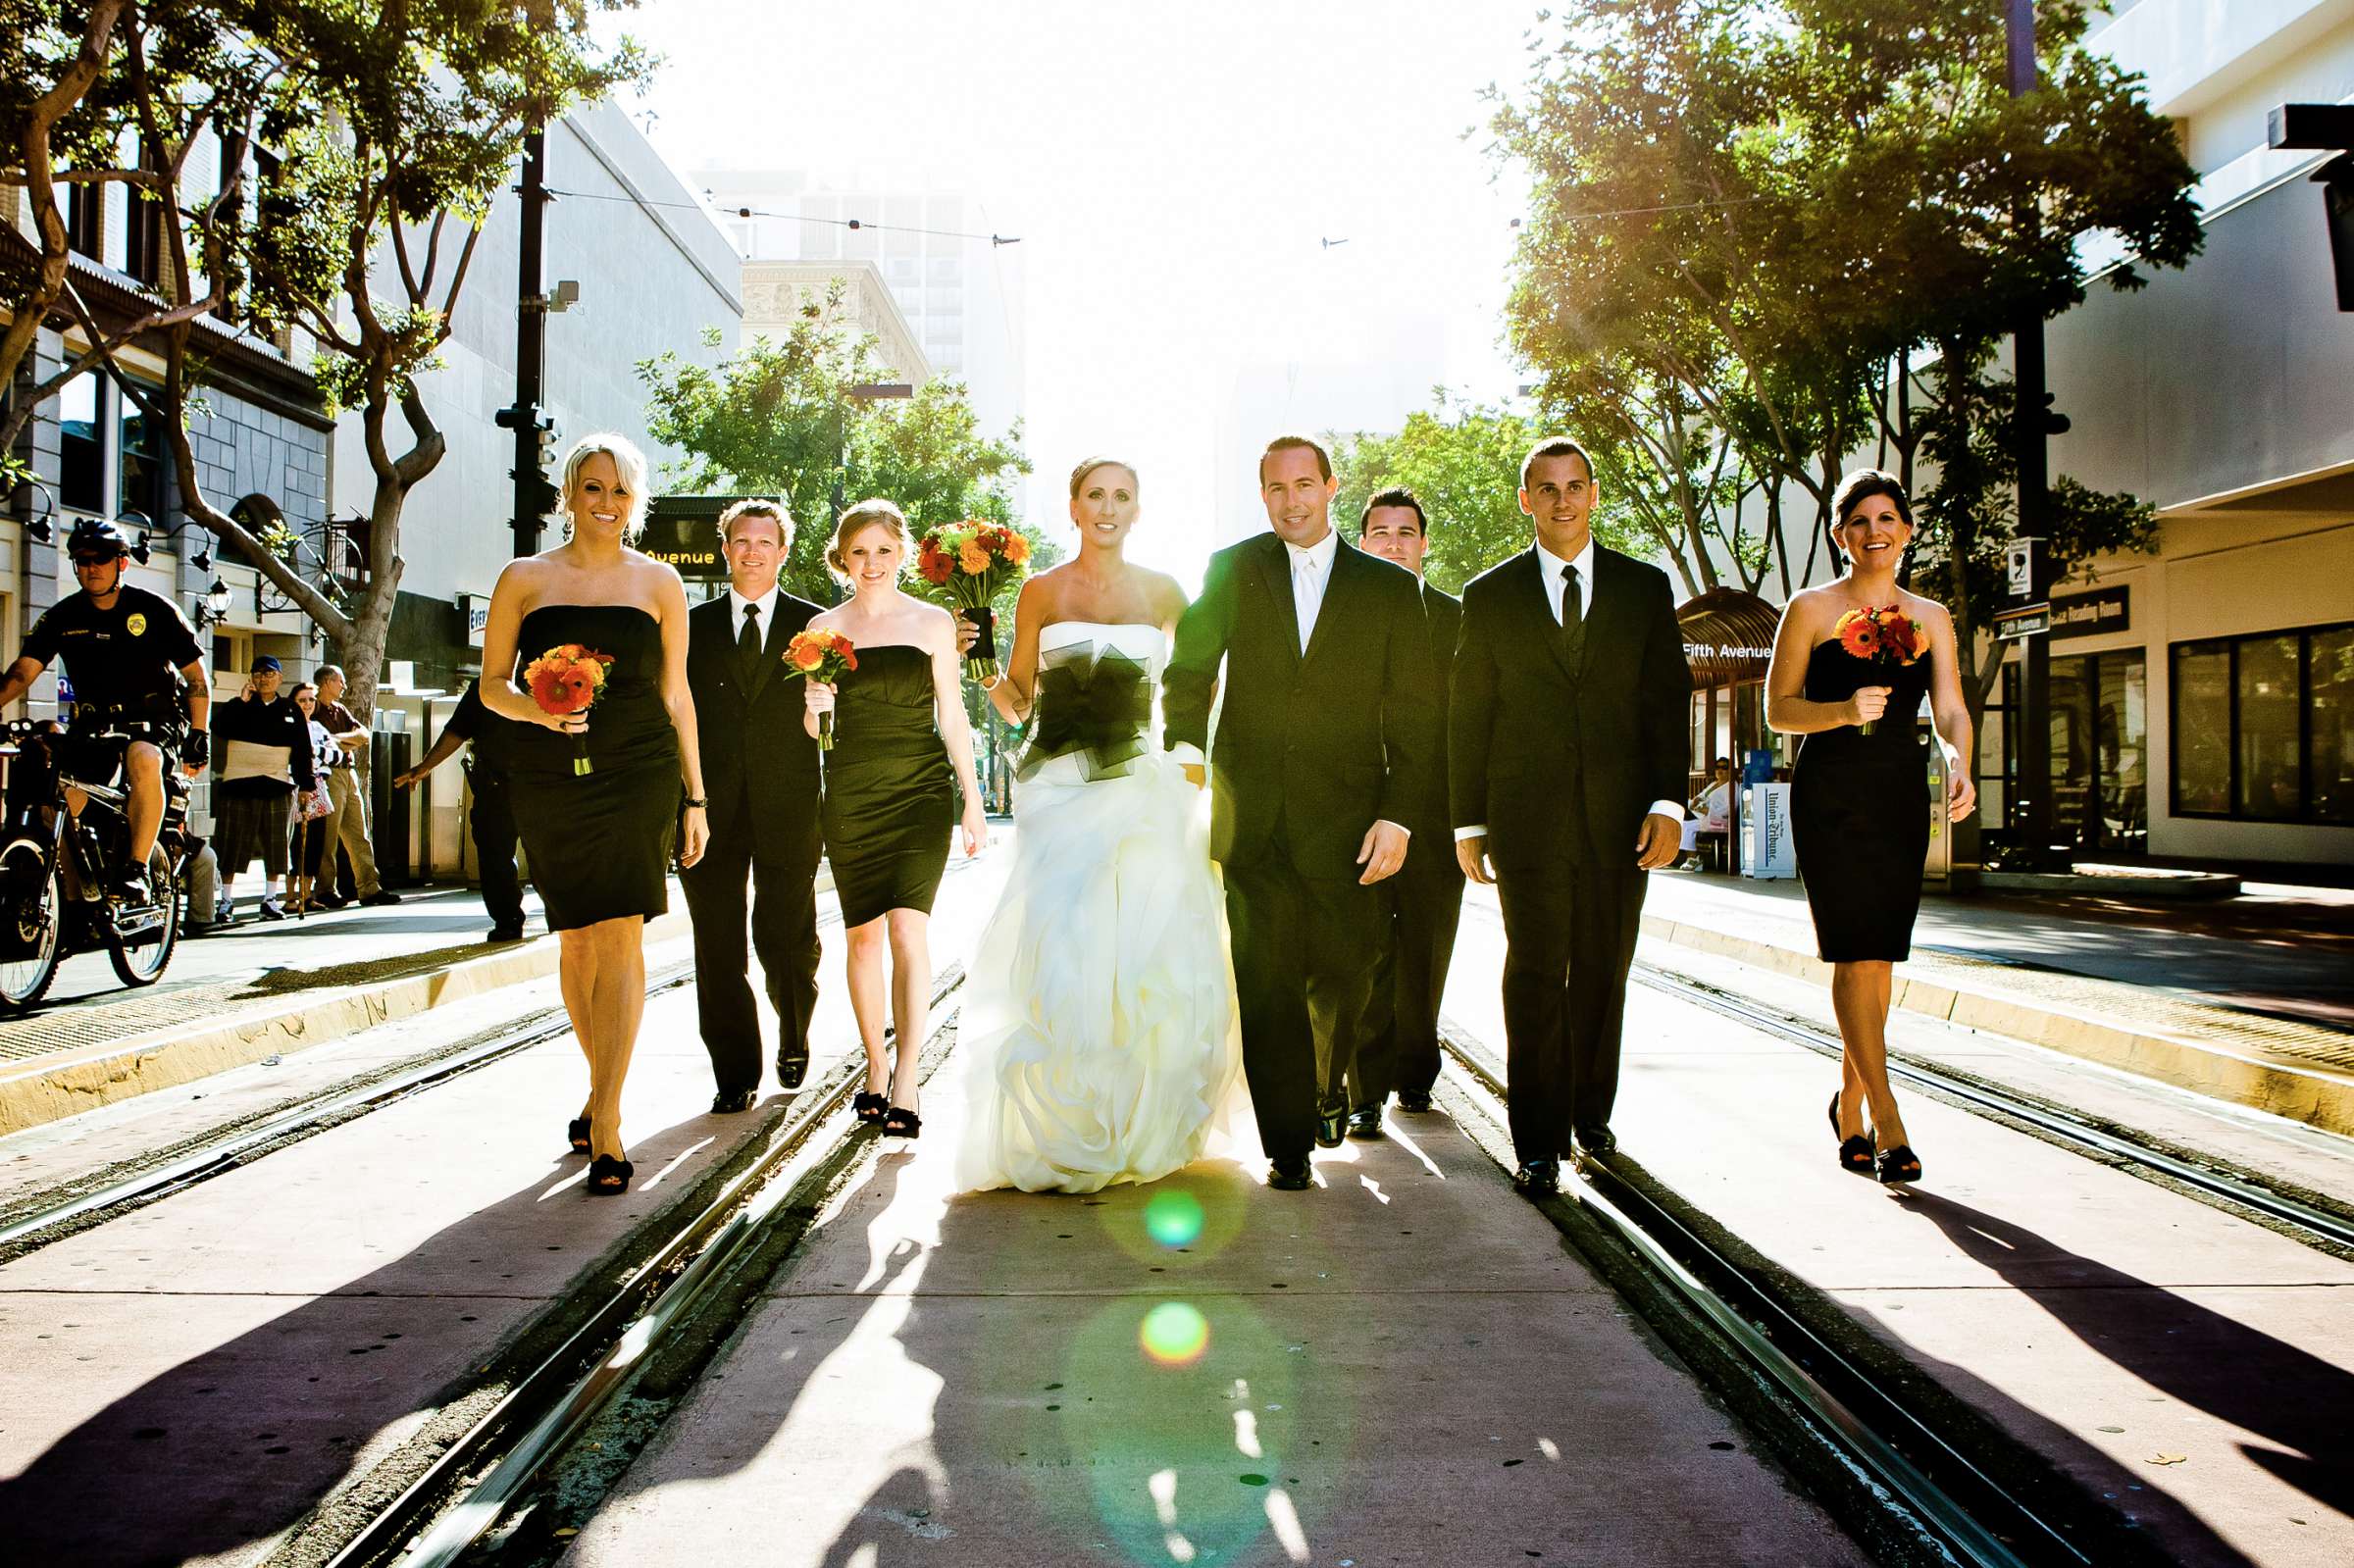 Hotel Palomar San Diego Wedding, Liz and Jeff Wedding Photo #205376 by True Photography